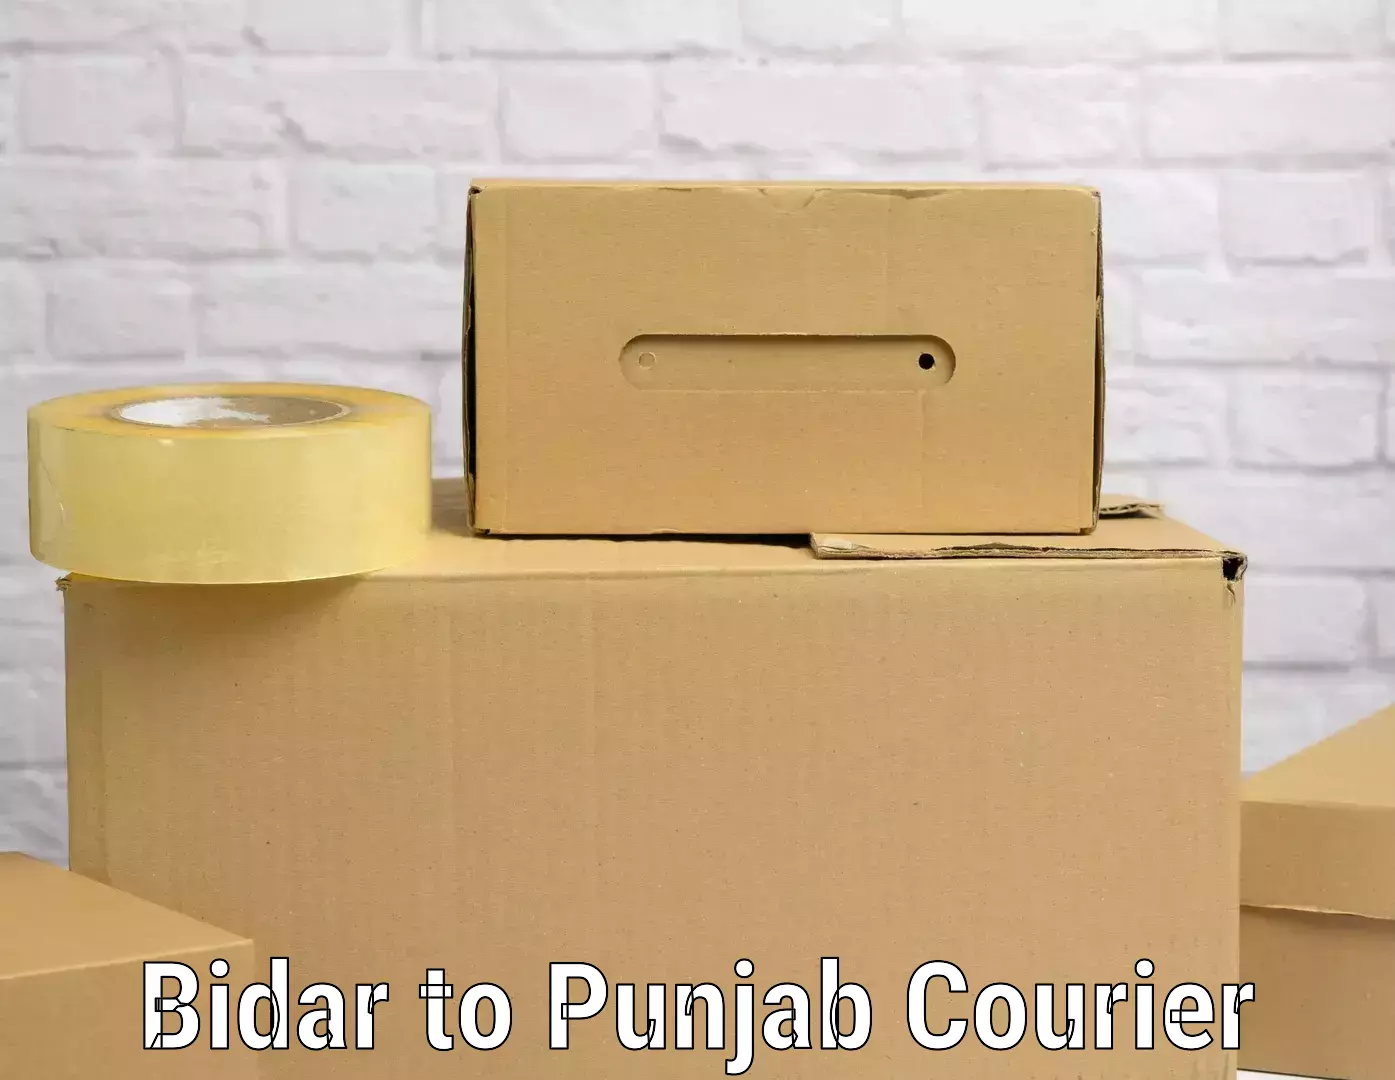 Luggage transport consulting Bidar to Punjab